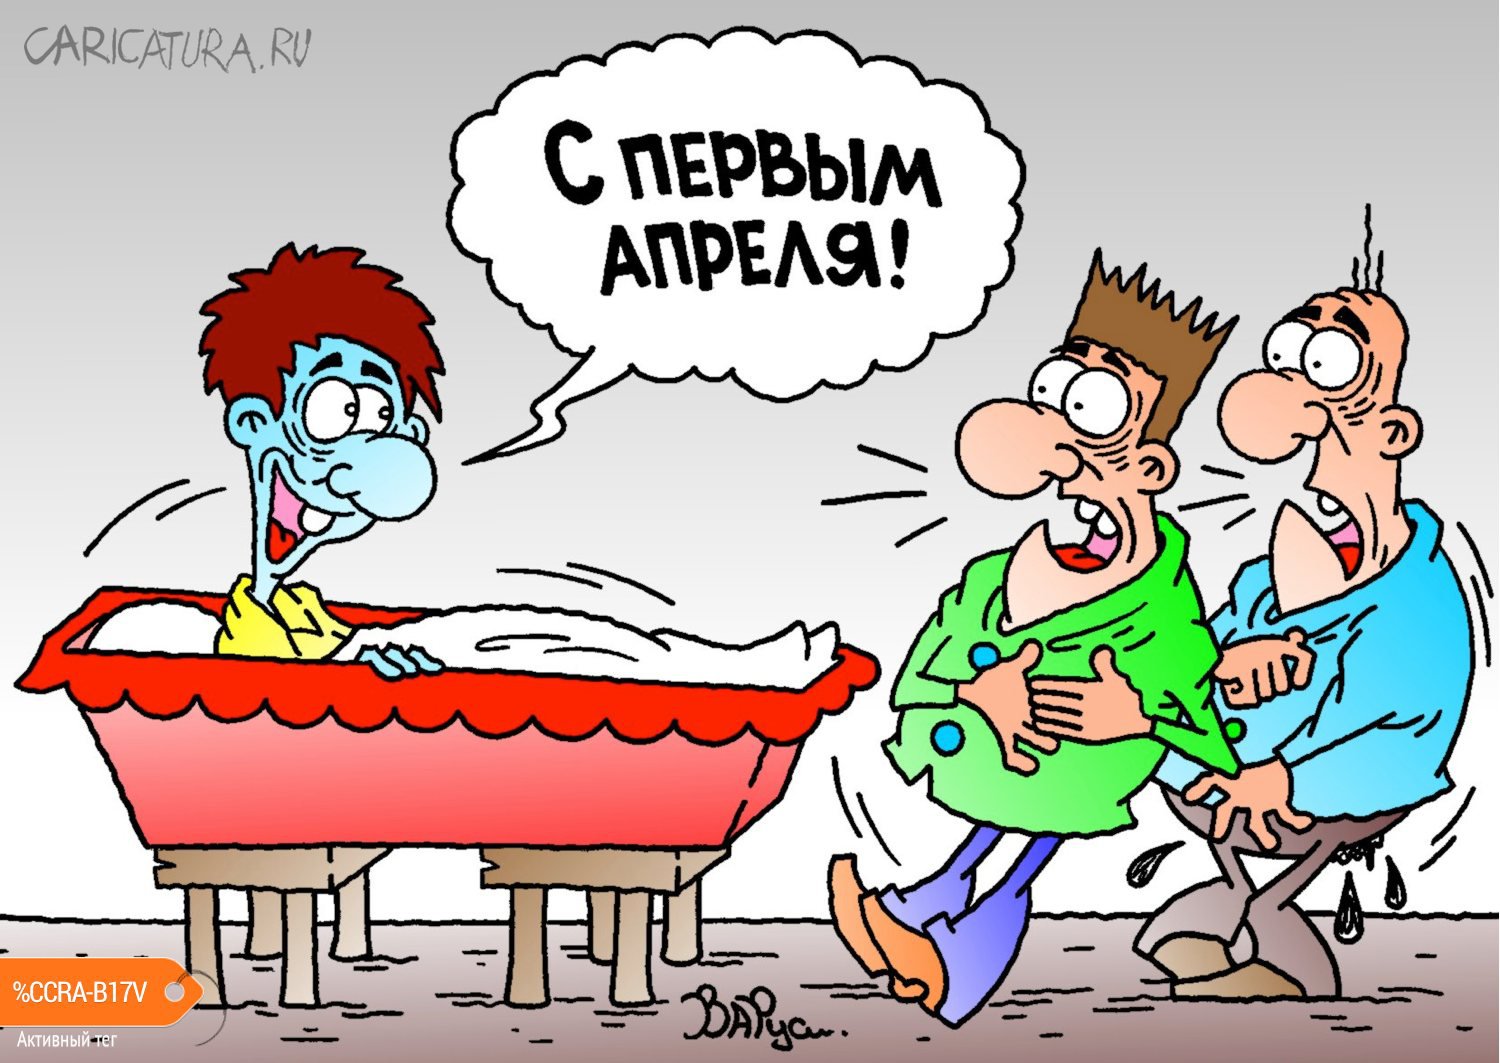 Карикатура "С первым апреля!", Руслан Валитов